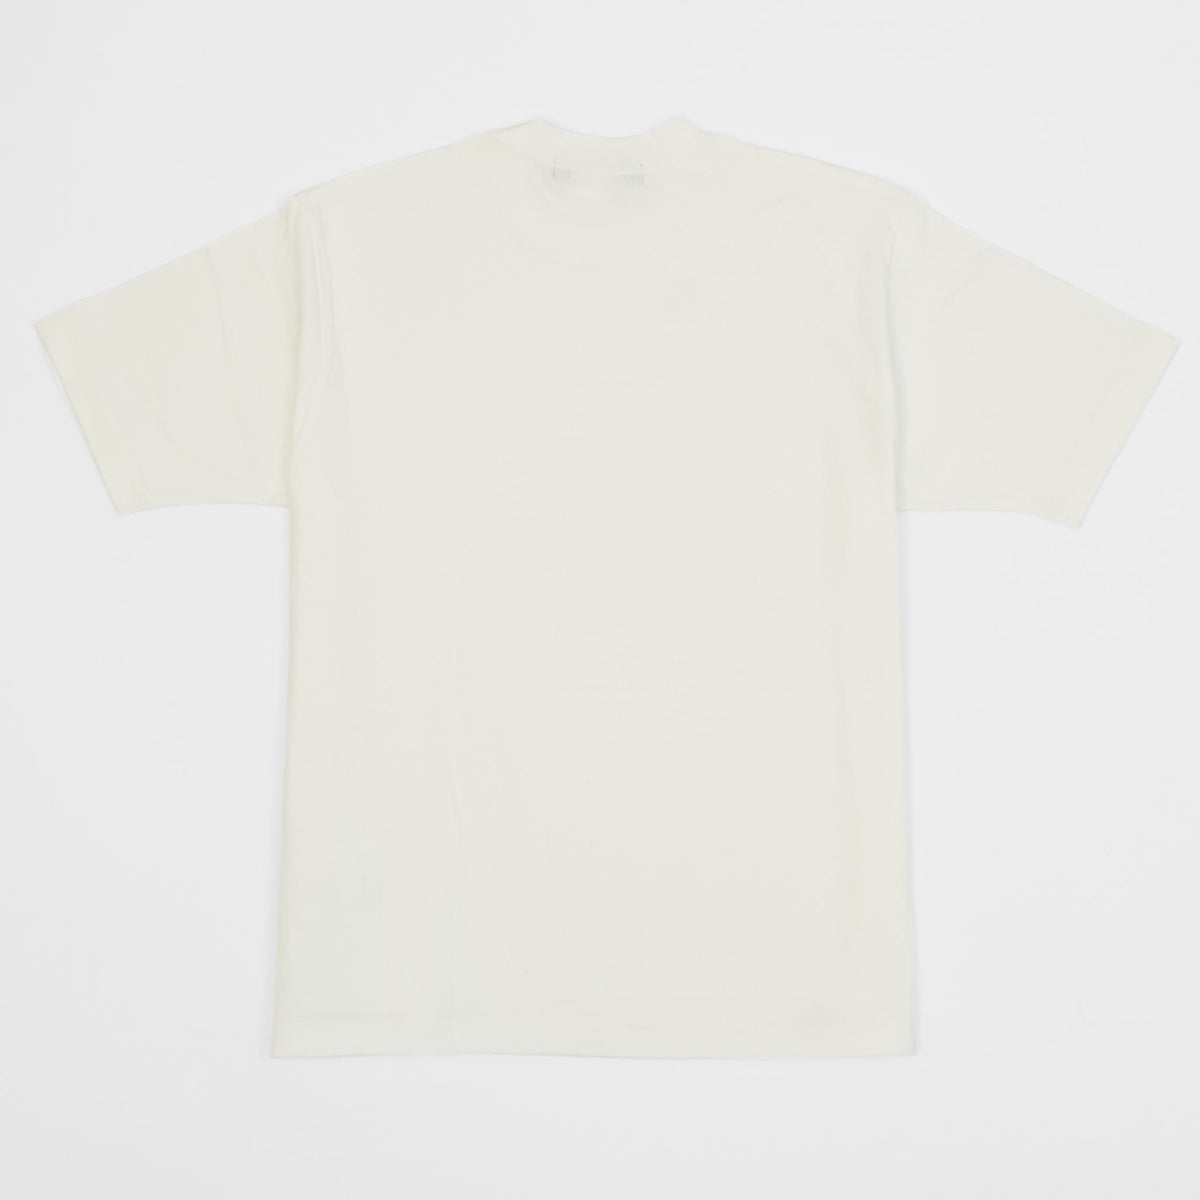 Junya Watanabe Man Crew Neck White Basic T-Shirt